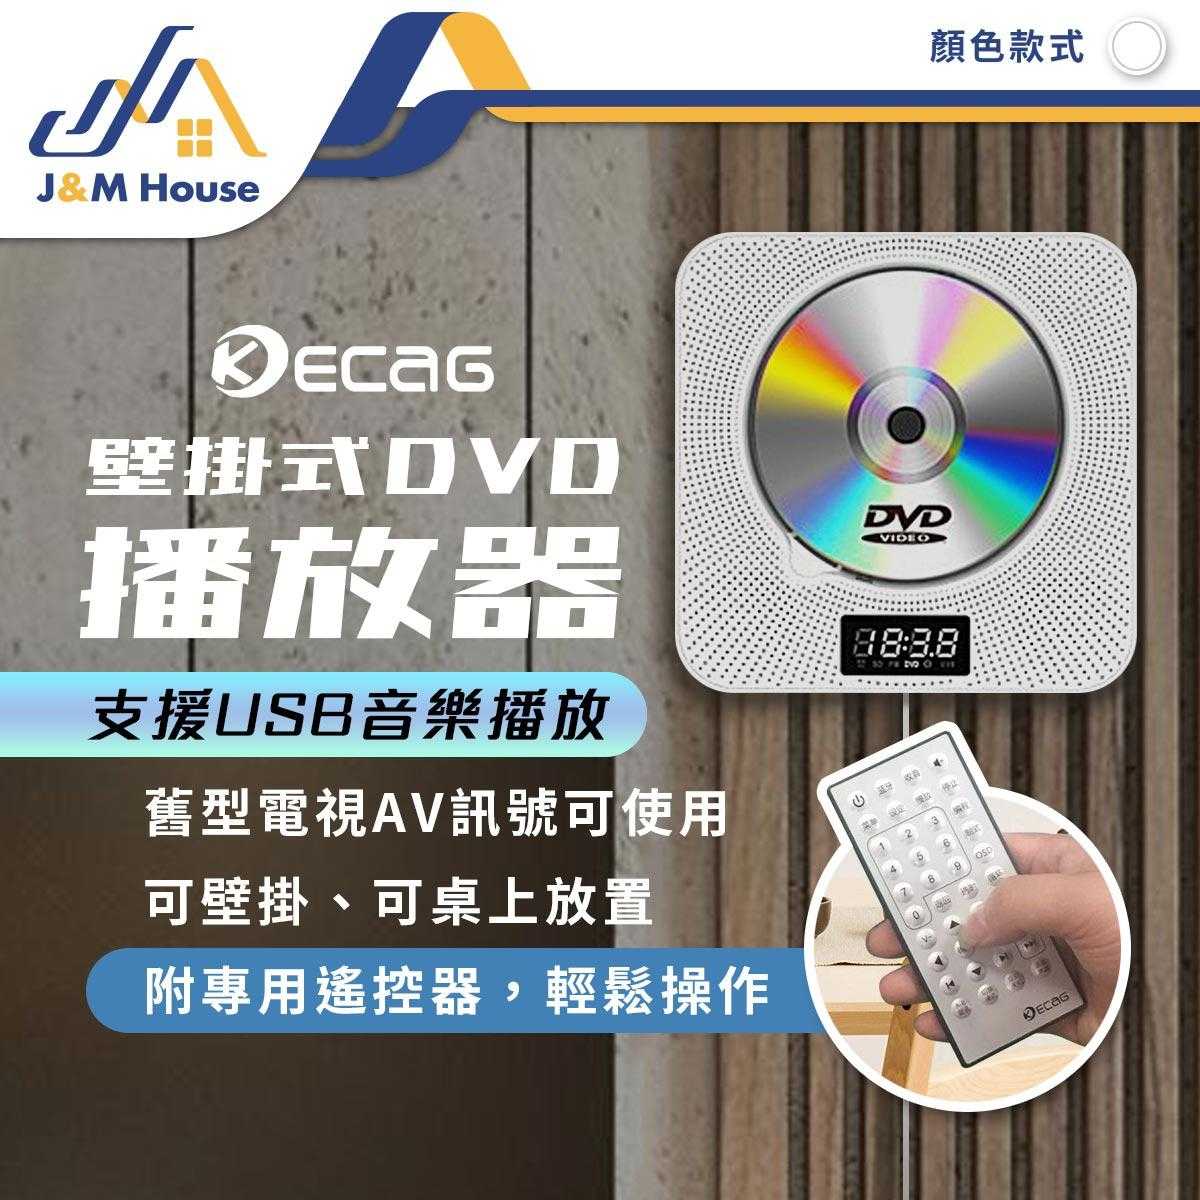 新款DVD/CD影音播放器 可壁掛桌面家用影碟機 CD播放器播放機 藍牙播放器英語學習機